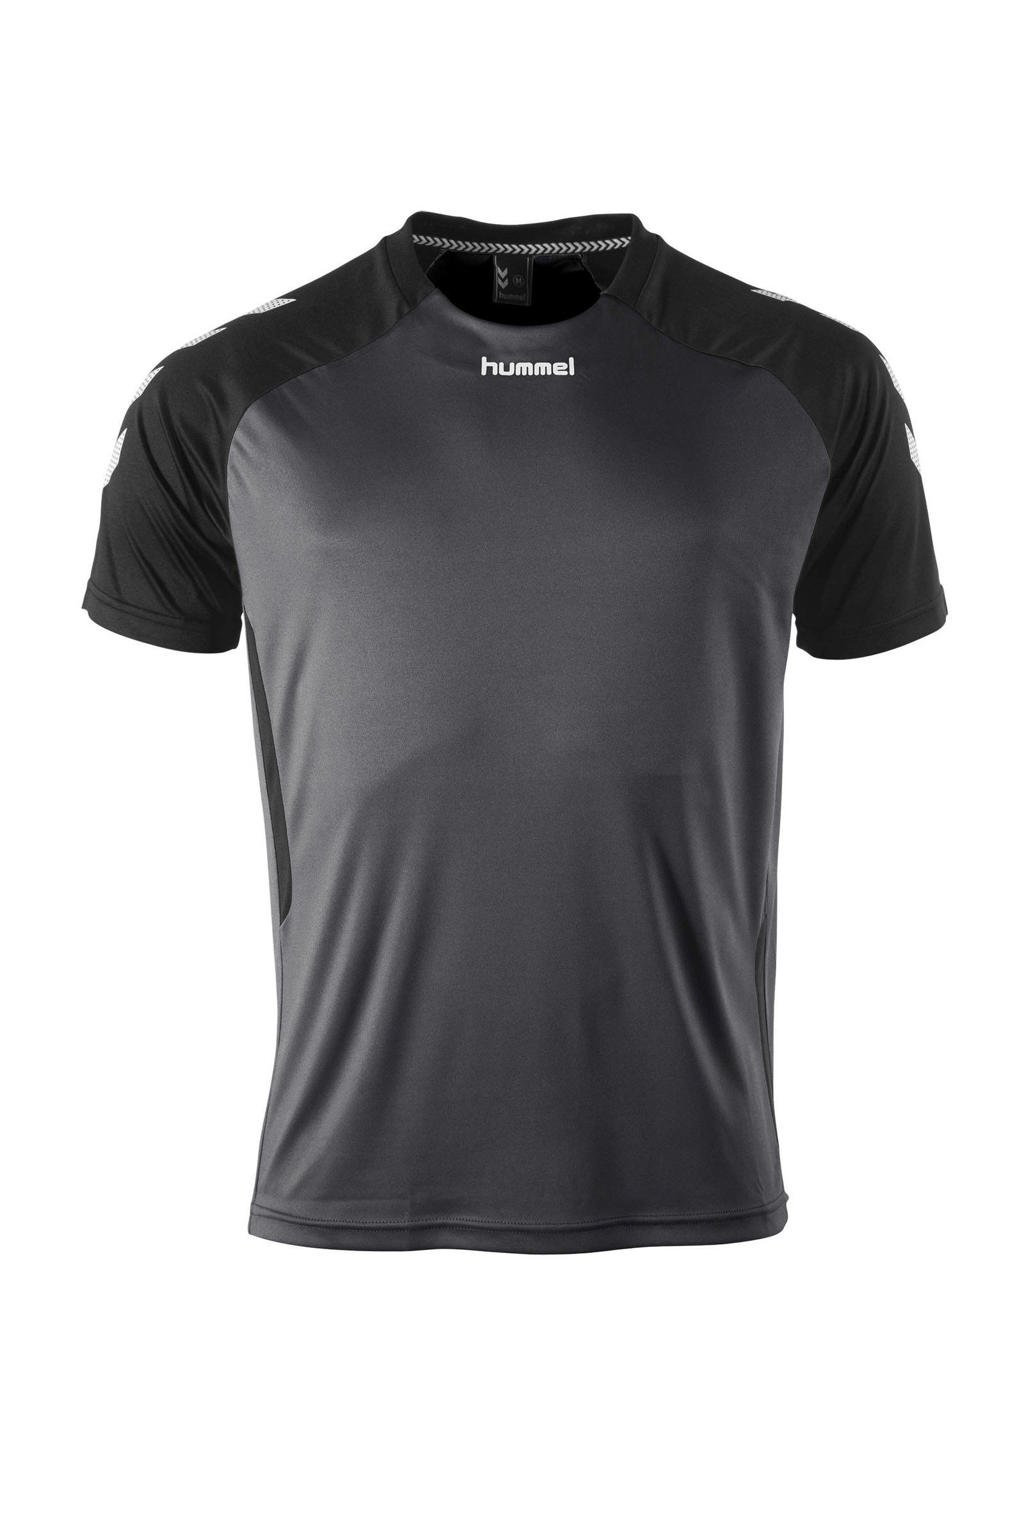 Antraciet en zwarte heren hummel Senior sport T-shirt Aarhus van polyester met korte mouwen en ronde hals